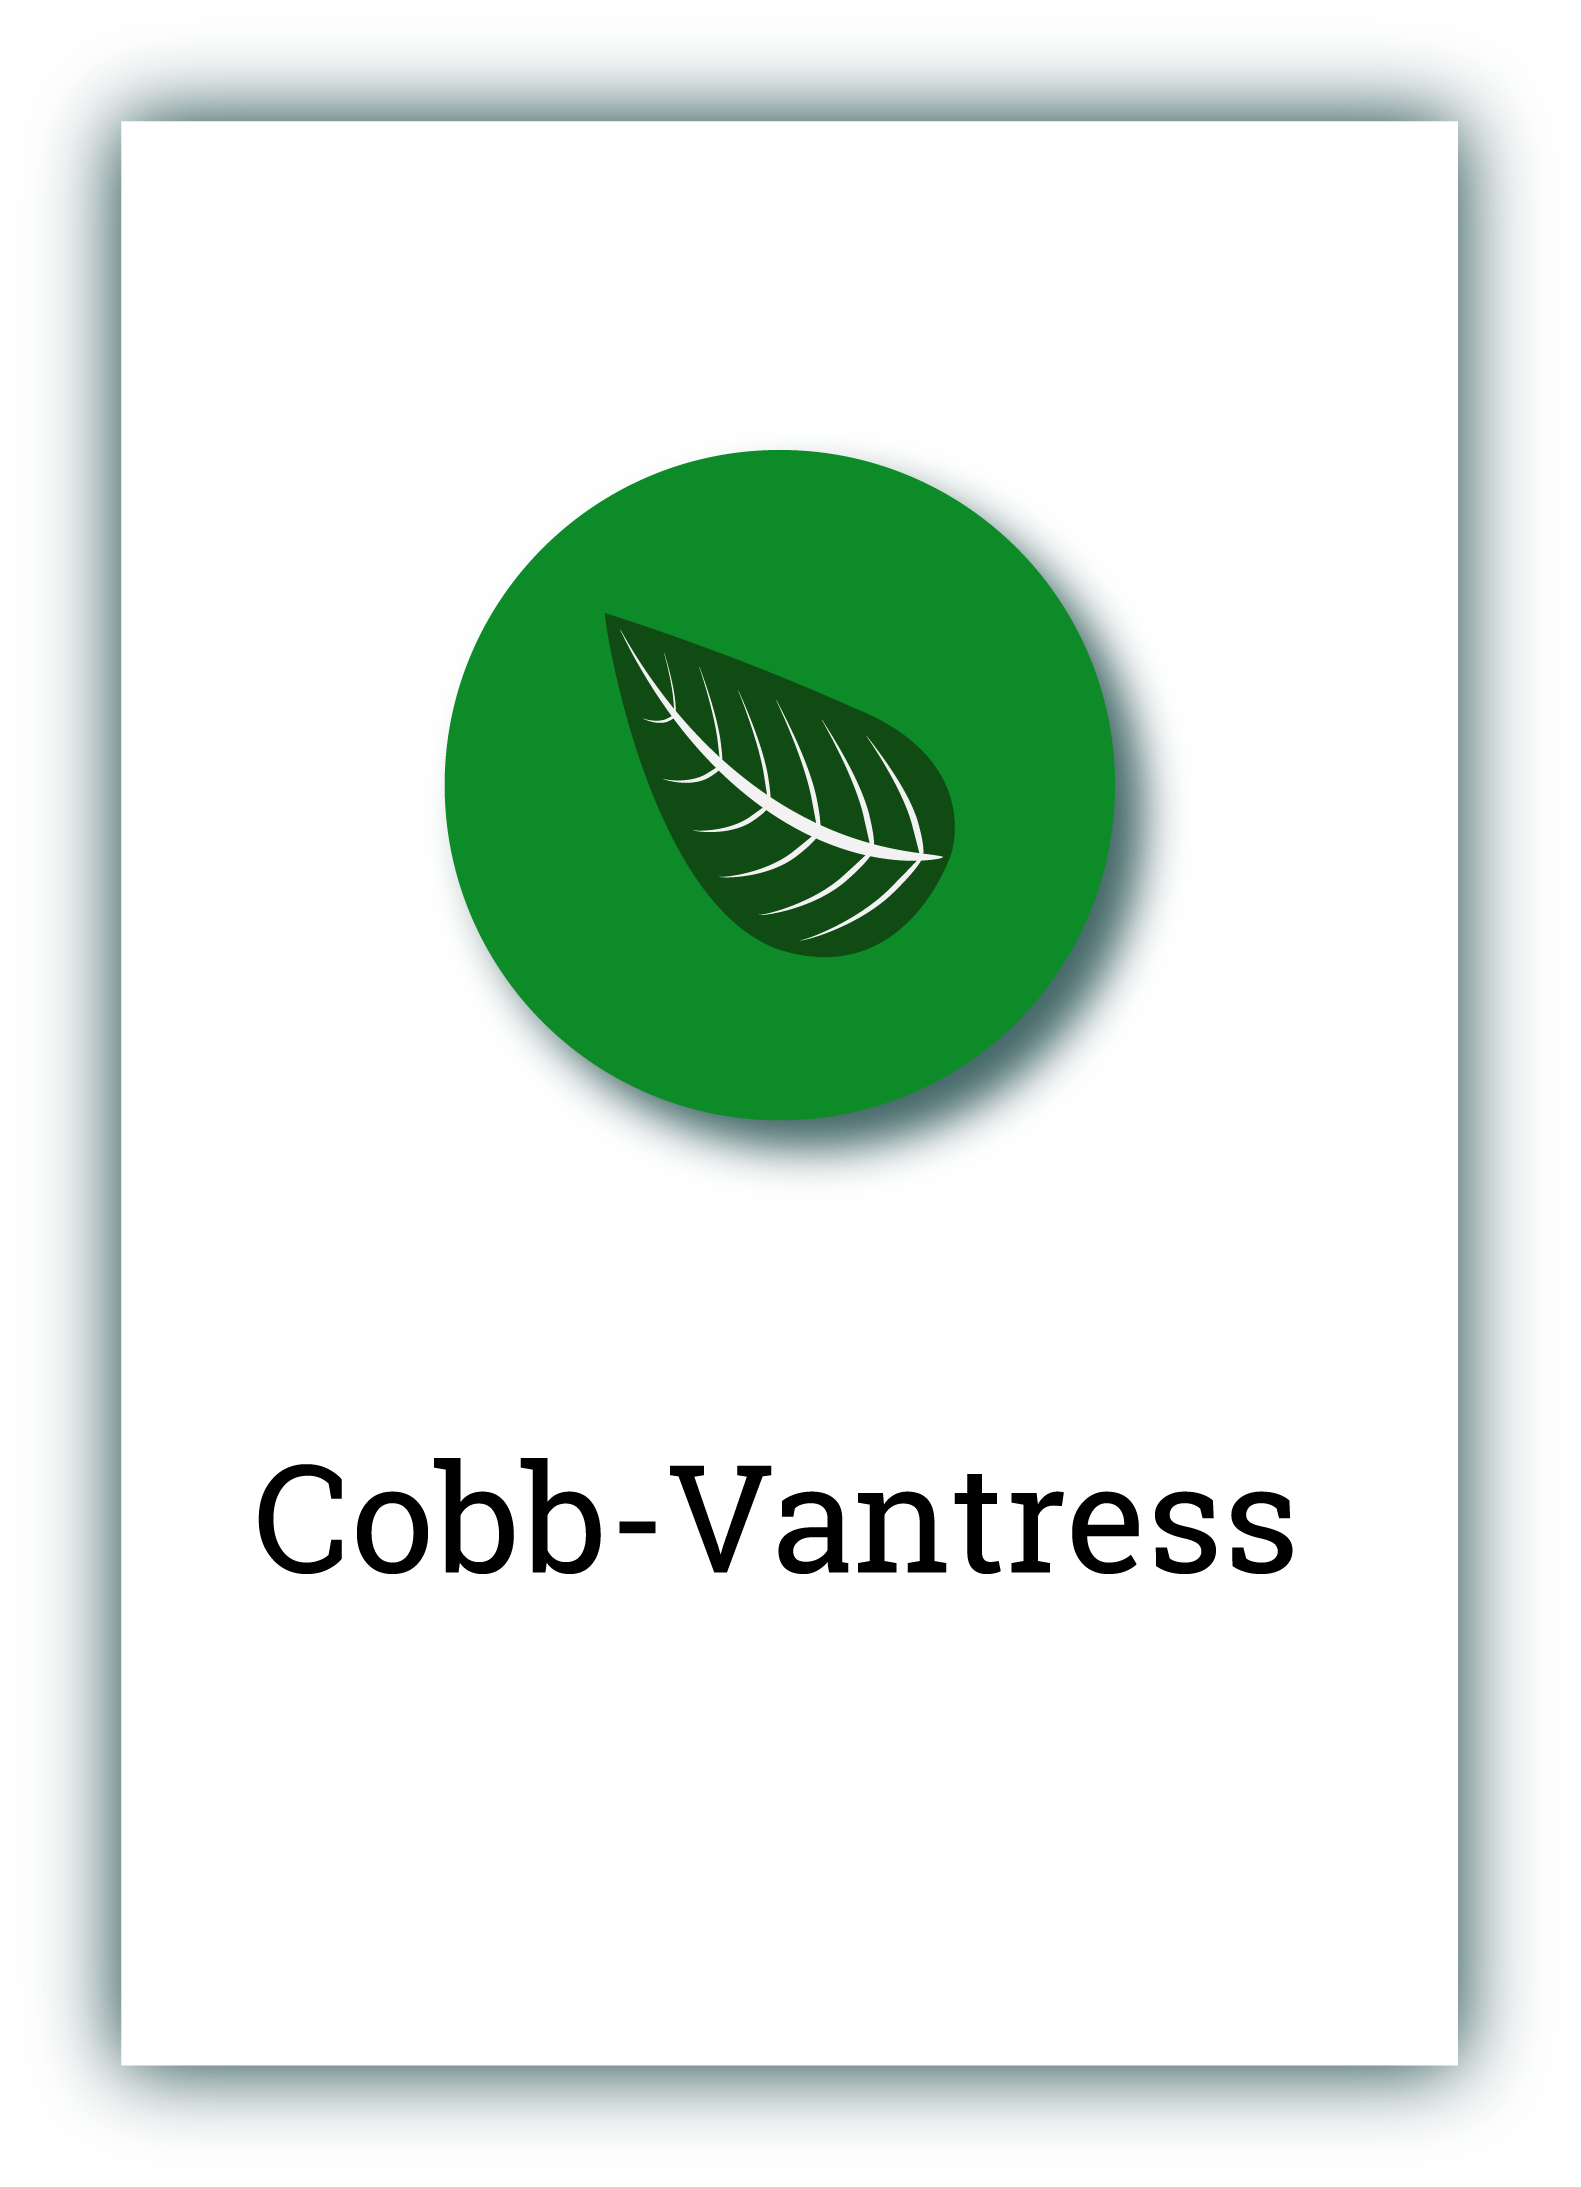 Cobb-Vantress